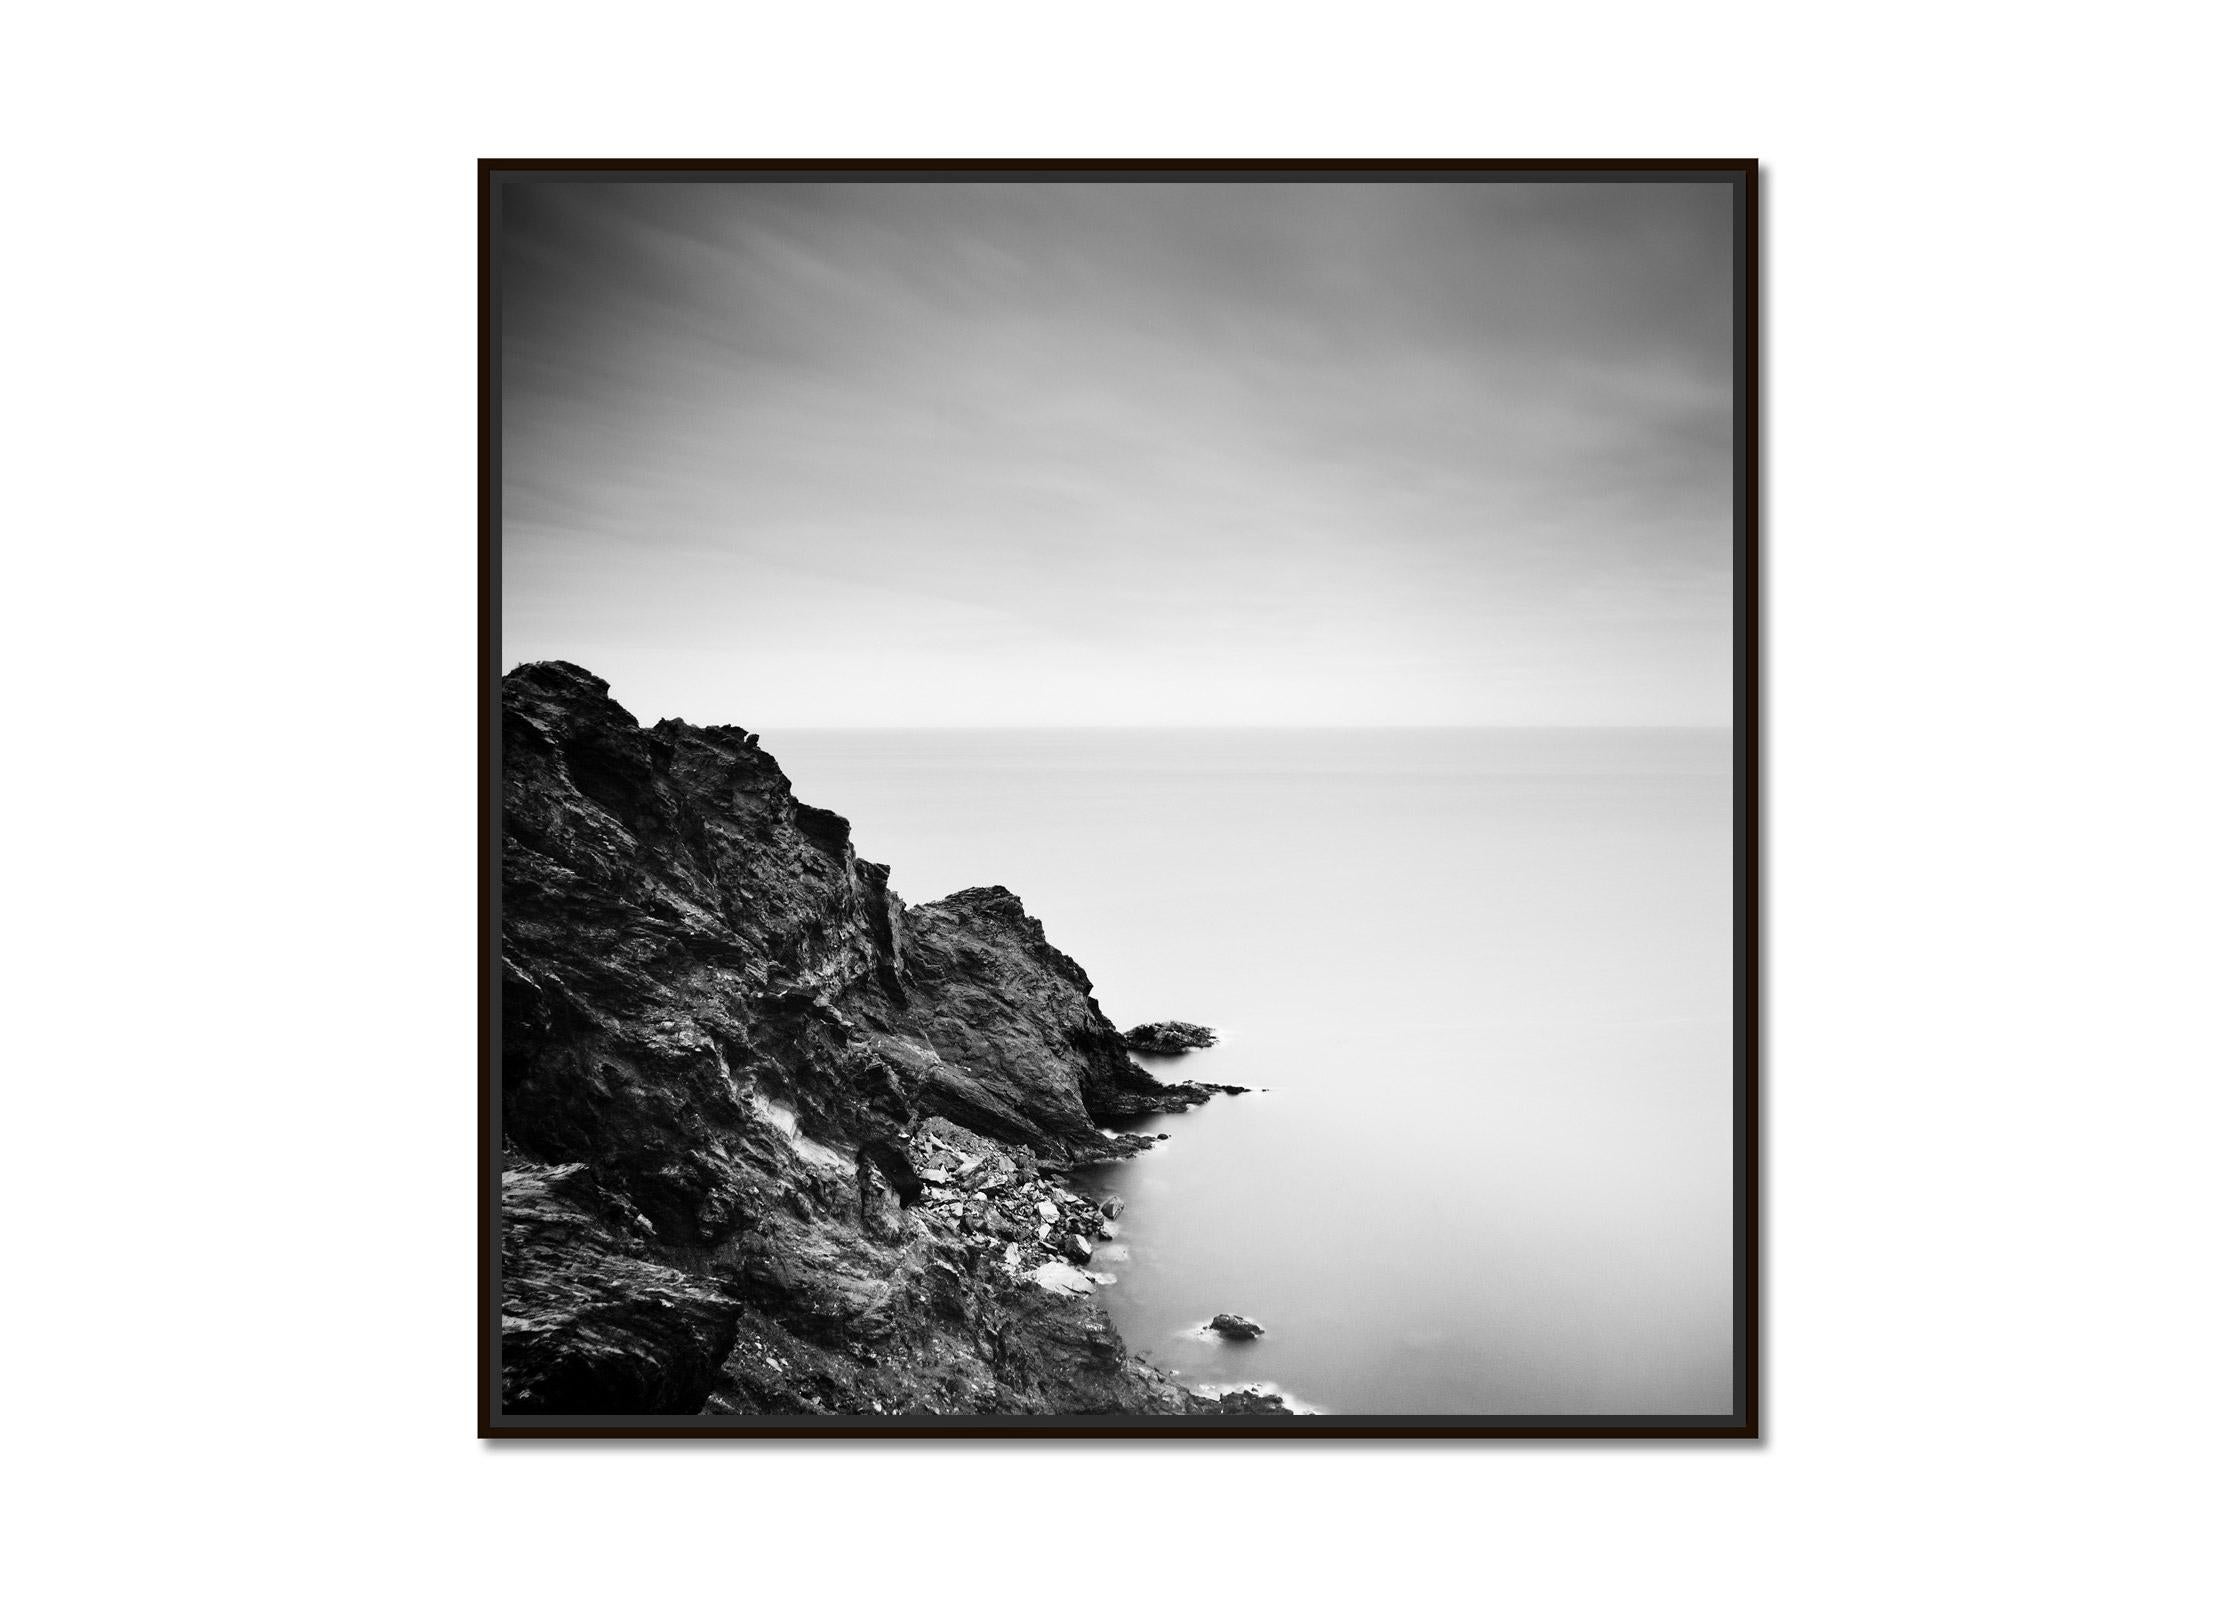 Côte atlantique, Whiting, Portugal, photographie noir et blanc, paysage fine art - Photograph de Gerald Berghammer, Ina Forstinger